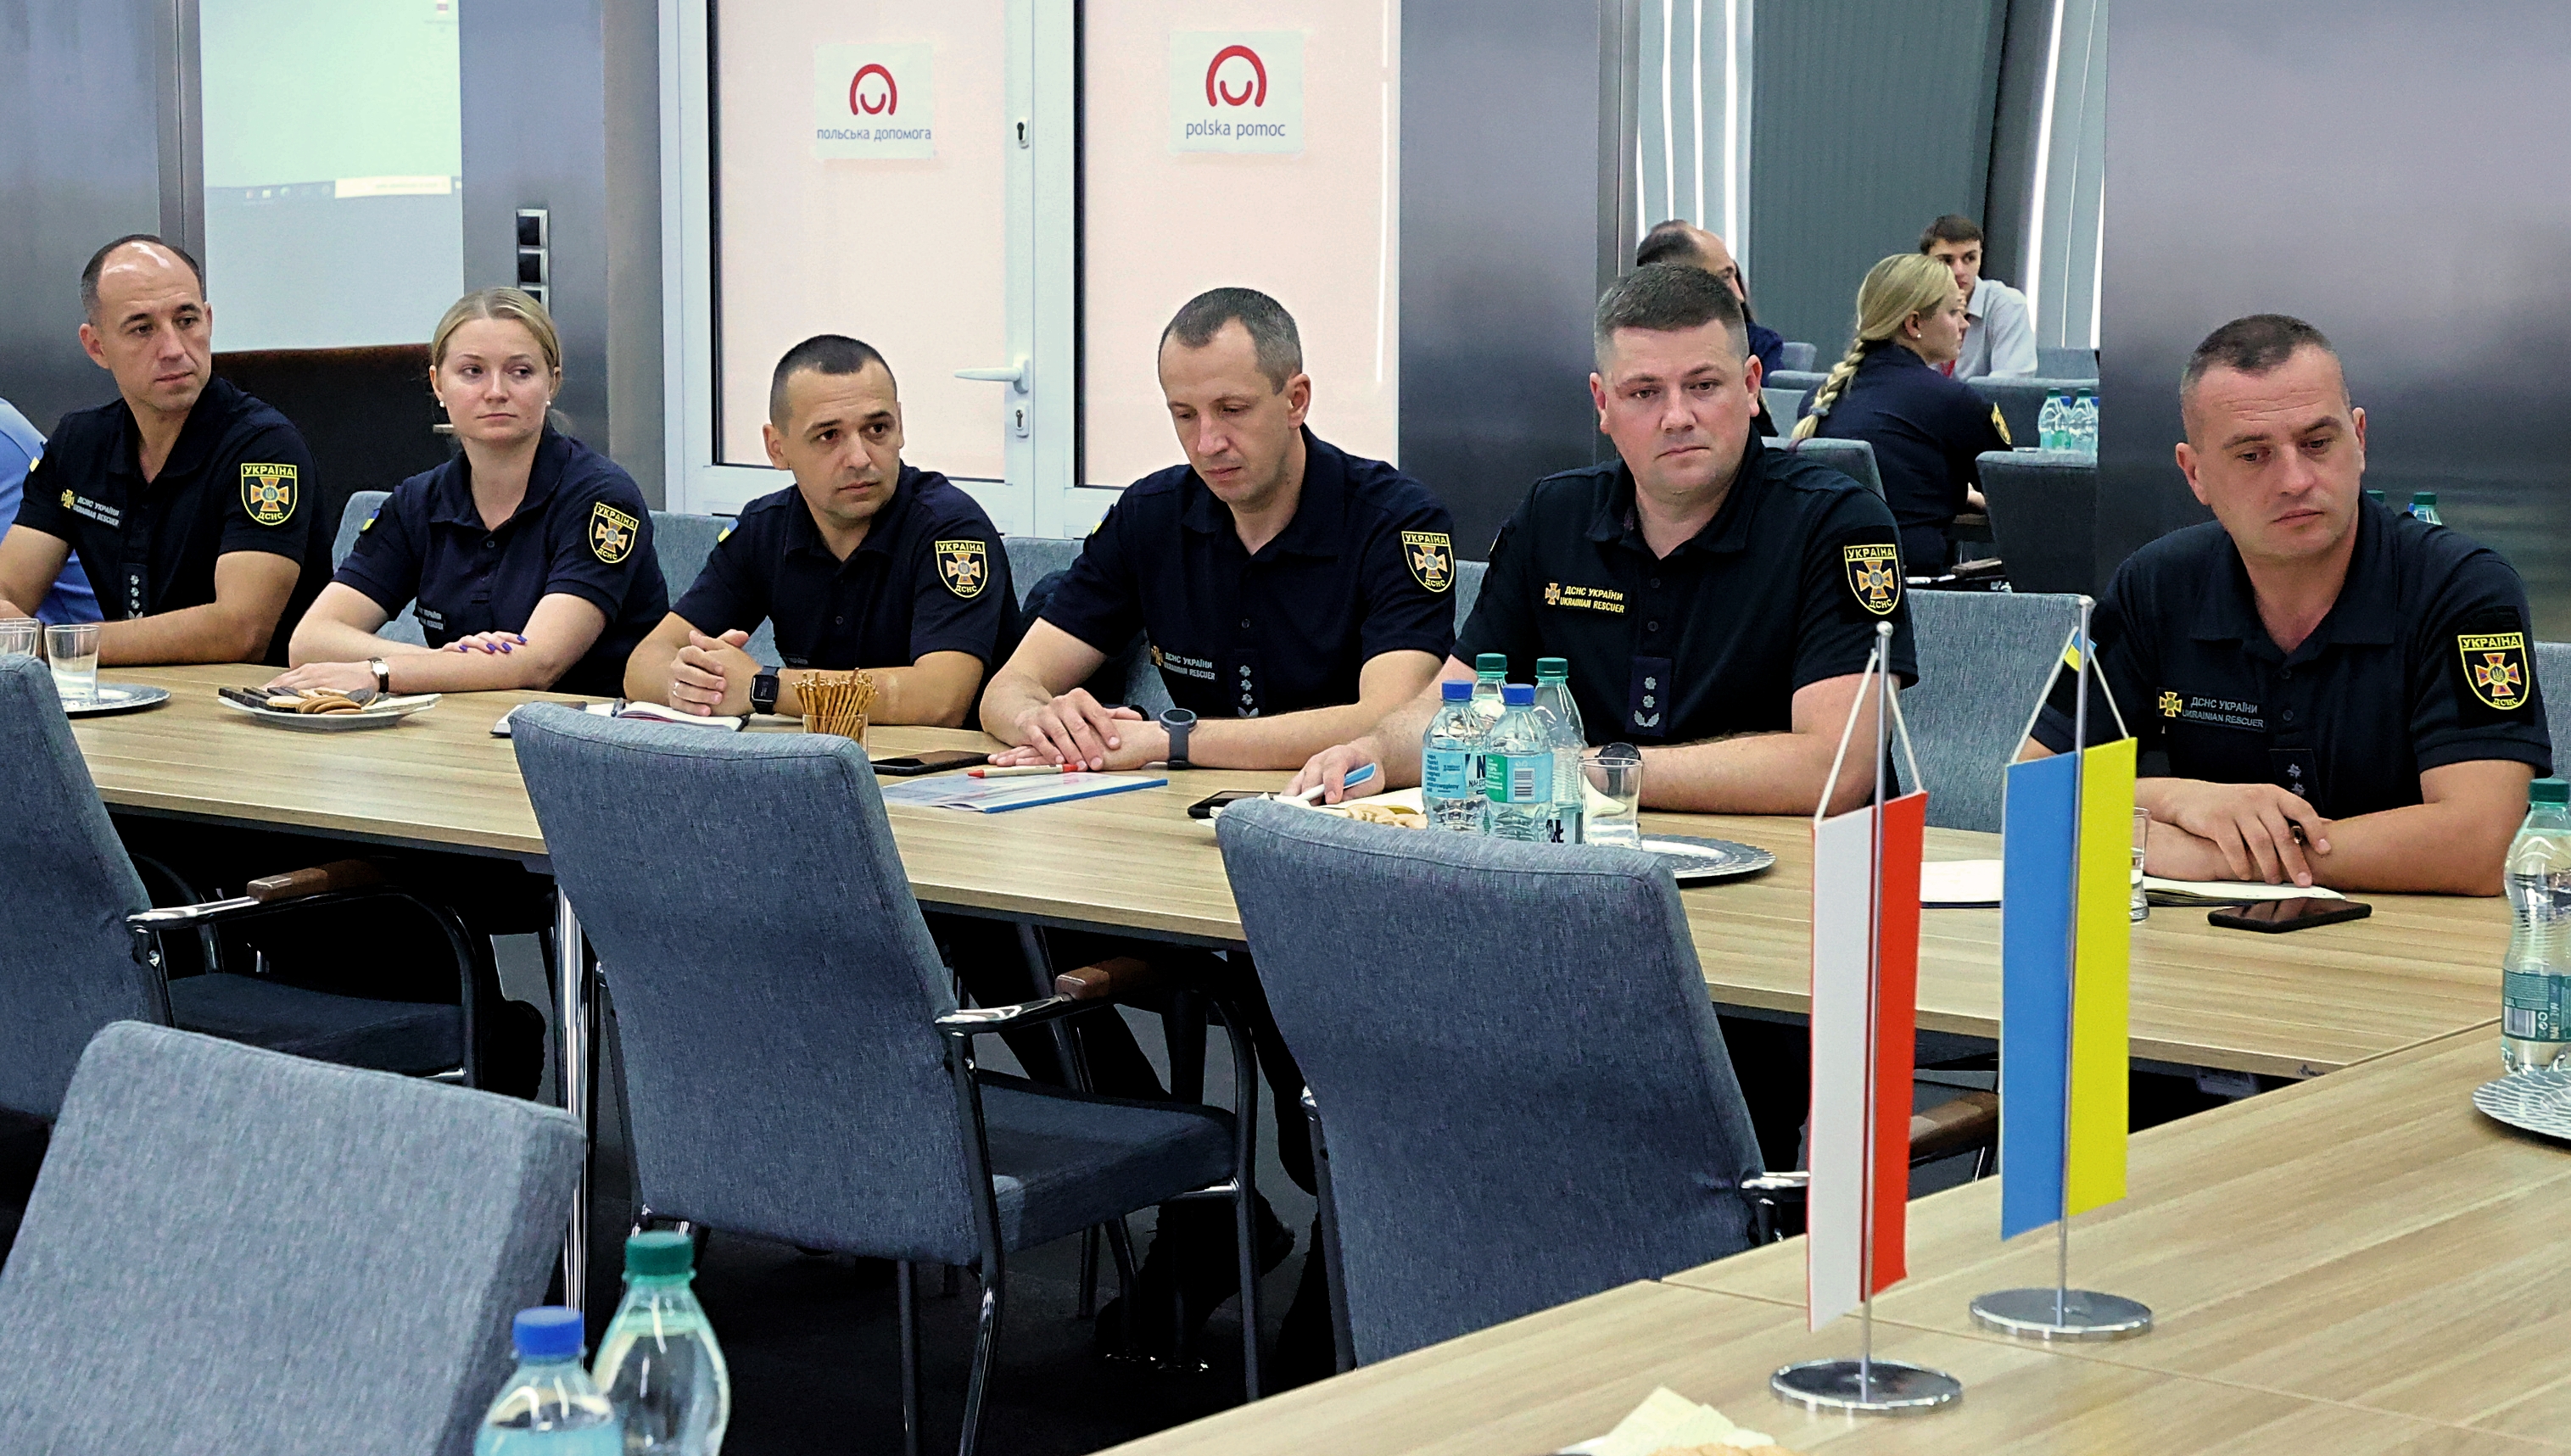 Sala konferencyjna w KG PSP za stołami siedzą: przedstawiciele ukraińskiej delegacji.